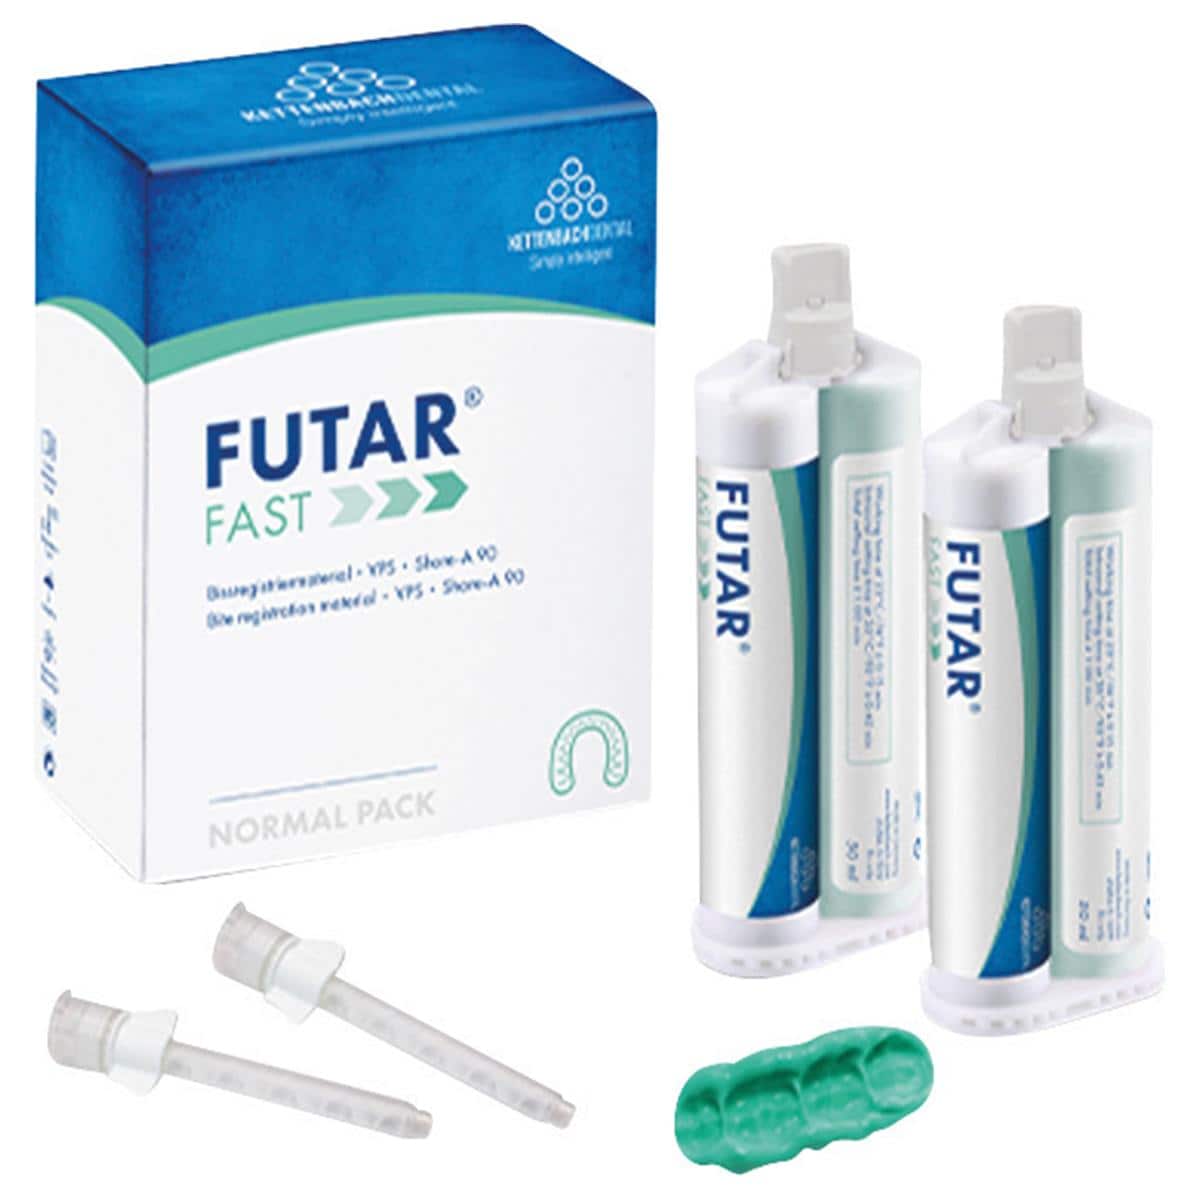 Futar® Fast - Nachfüllpackung - Kartuschen 2 x 50 ml